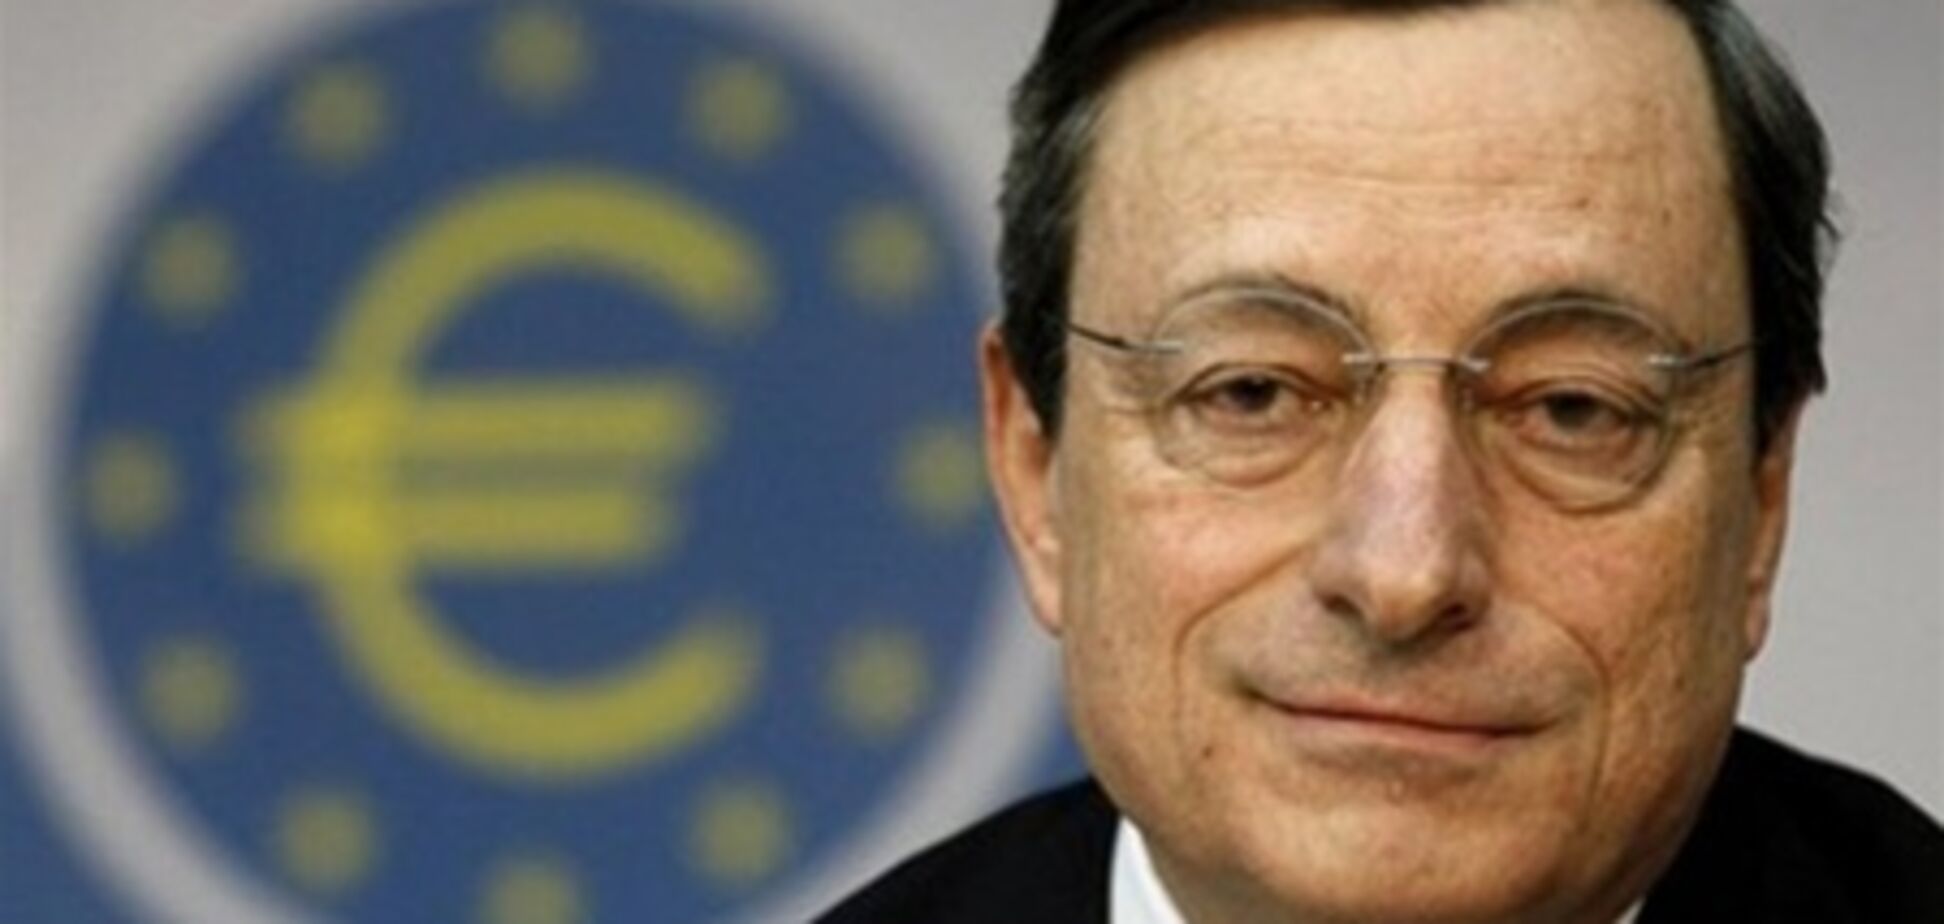 Еврокризис: глава ЕЦБ действует под давлением Германии